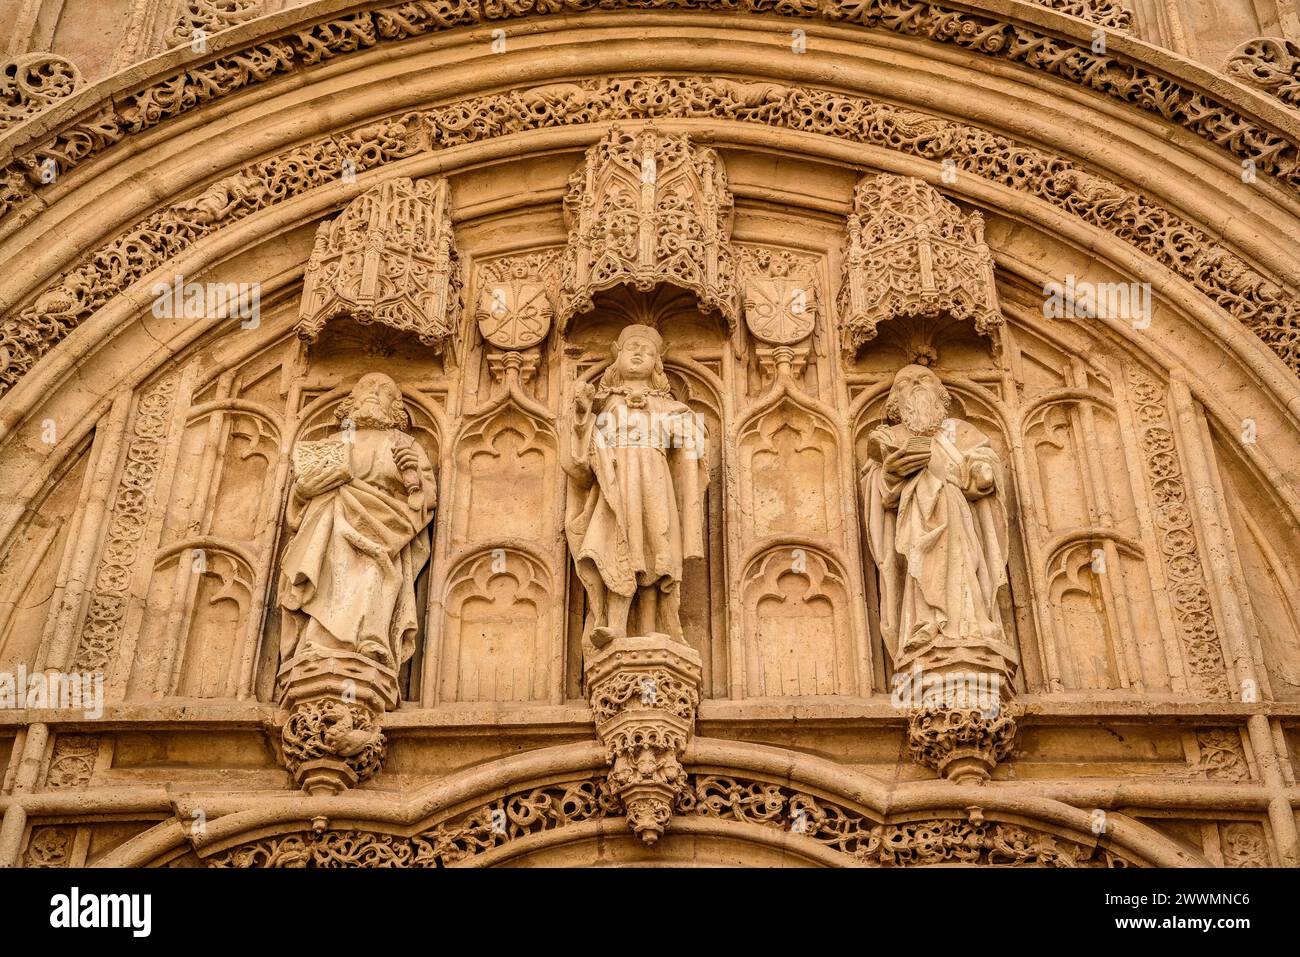 Dekorative Details der Außenfassade der Moschee von Córdoba (Andalusien, Spanien) ESP: Detalles ornamentales de la fachada, Mezquita de Córdoba Stockfoto